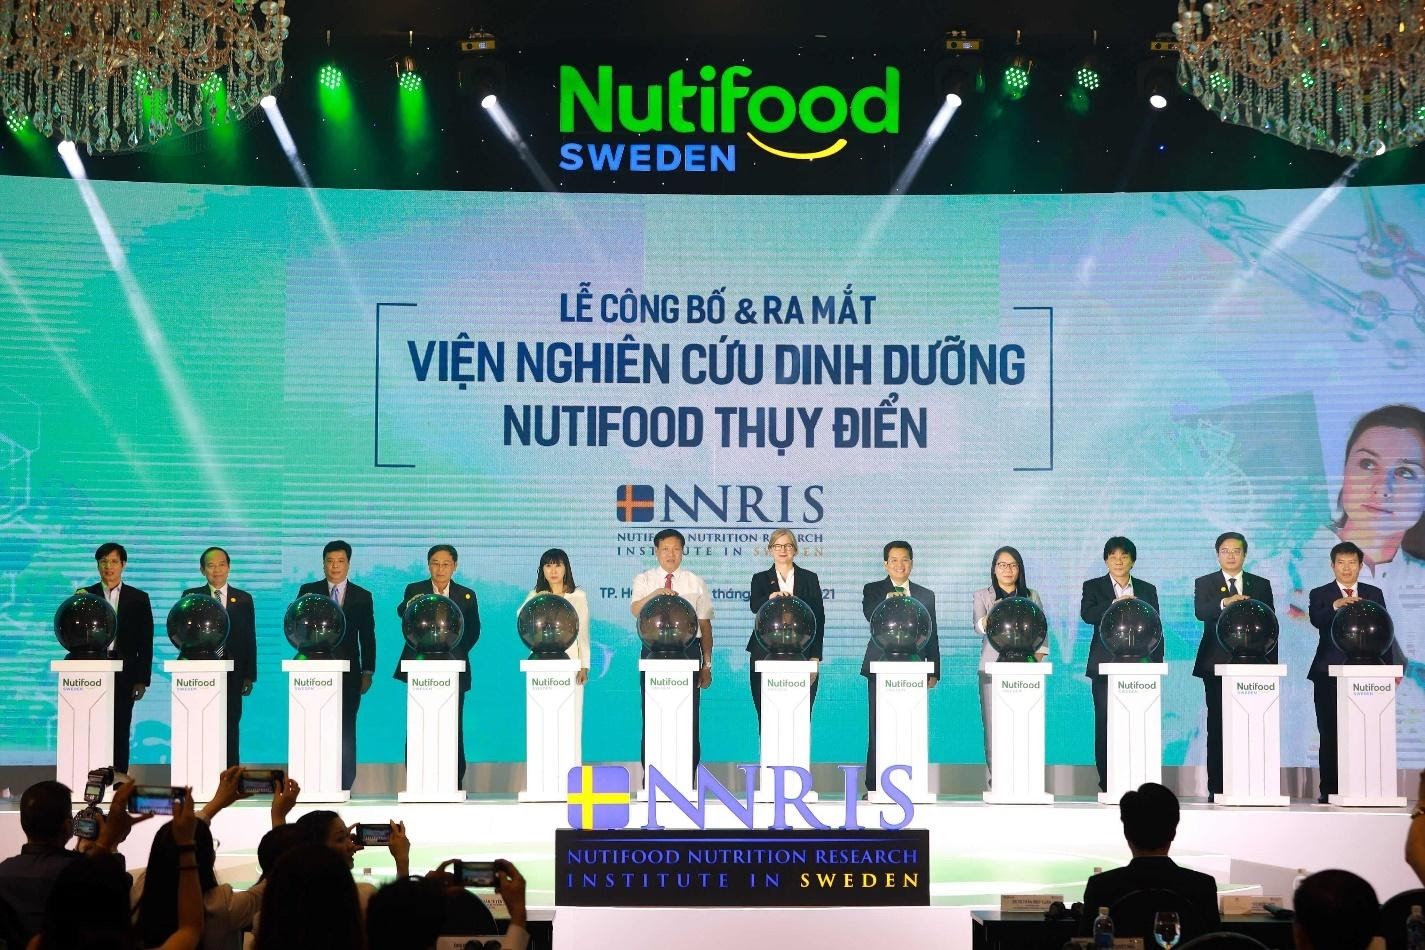 NutiFood ra mắt Viện Nghiên cứu dinh dưỡng NutiFood Thụy Điển quy tụ các chuyên gia dinh dưỡng hàng đầu thế giới và Việt Nam